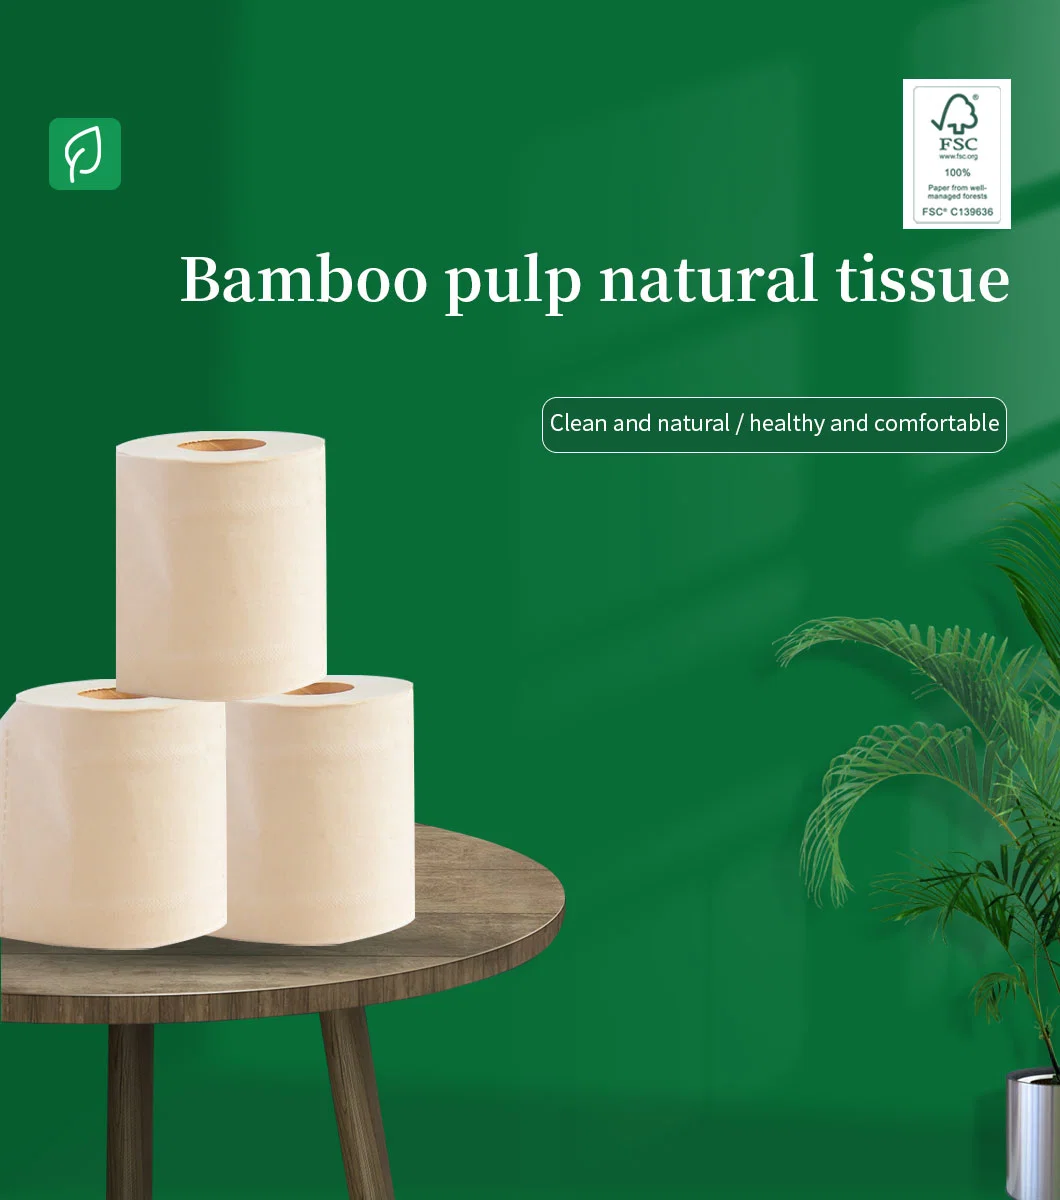 Fábrica de ISO pequena quantidade mínima de 3 folhas de papel higiénico Virgem Papel de bambu Eco-Friendly Material fita de papel tinta ambiental toalha Rolo de papel Papel Tissue Rolo jumbo